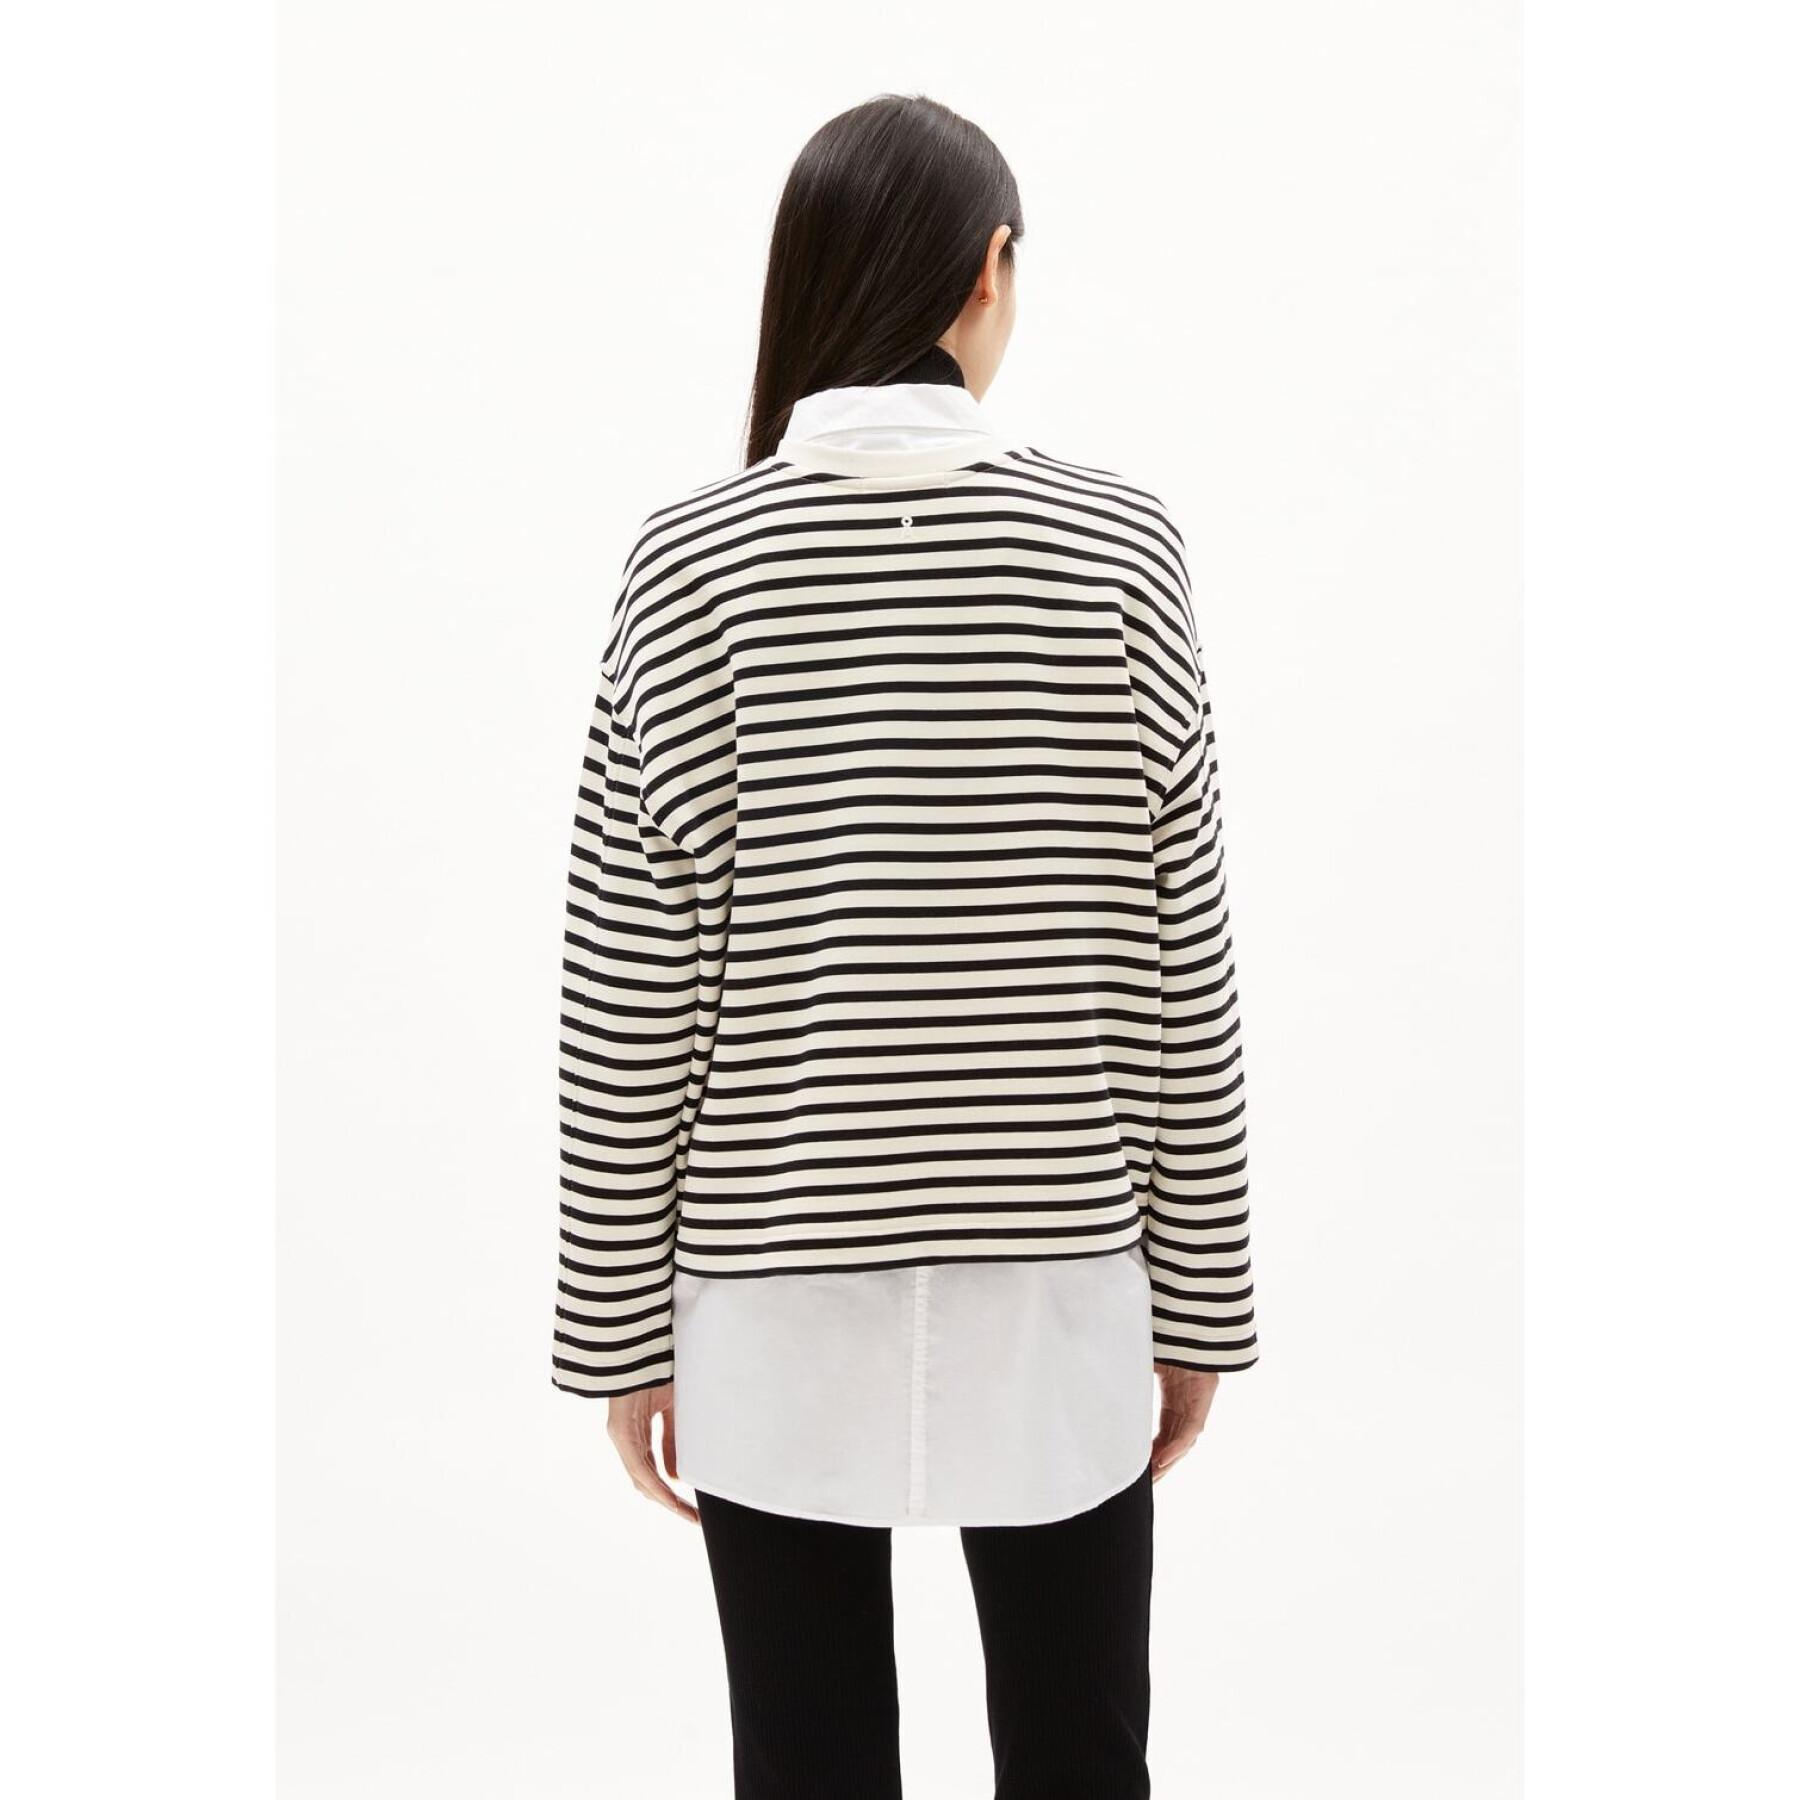 Women's striped sweatshirt ARMEDANGELS Frankaa